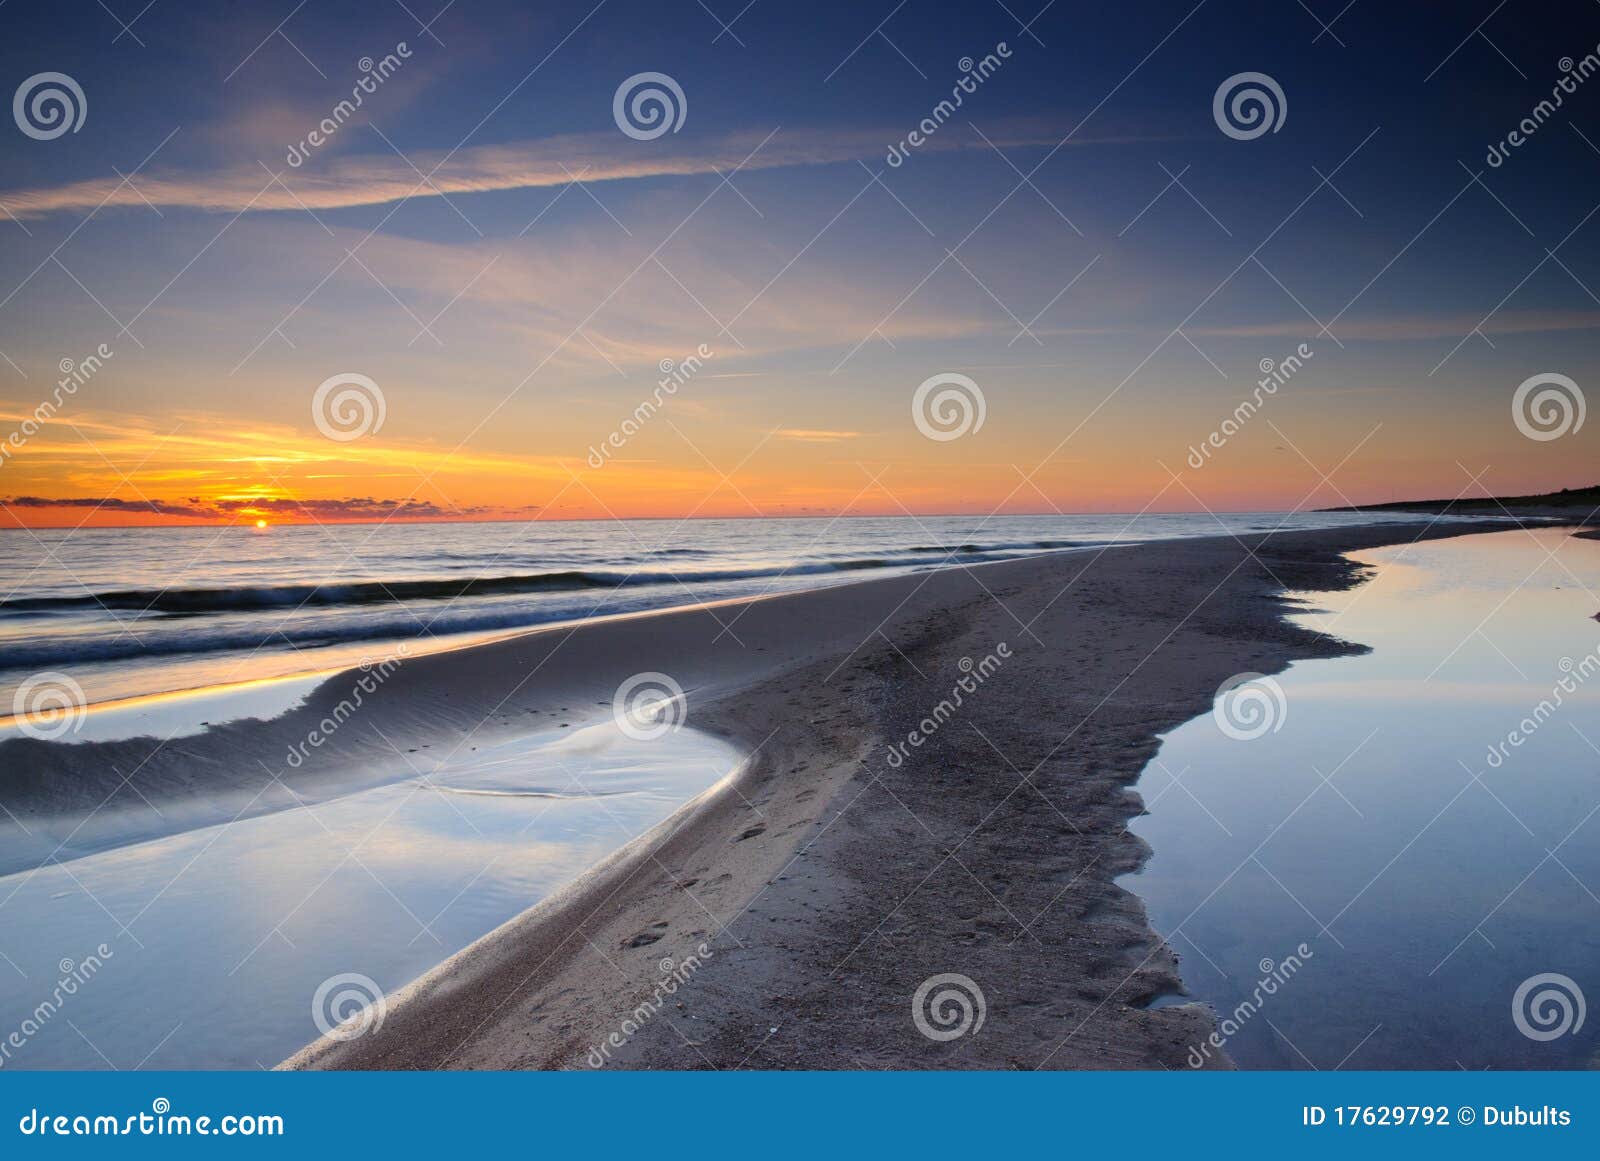 baltic seashore